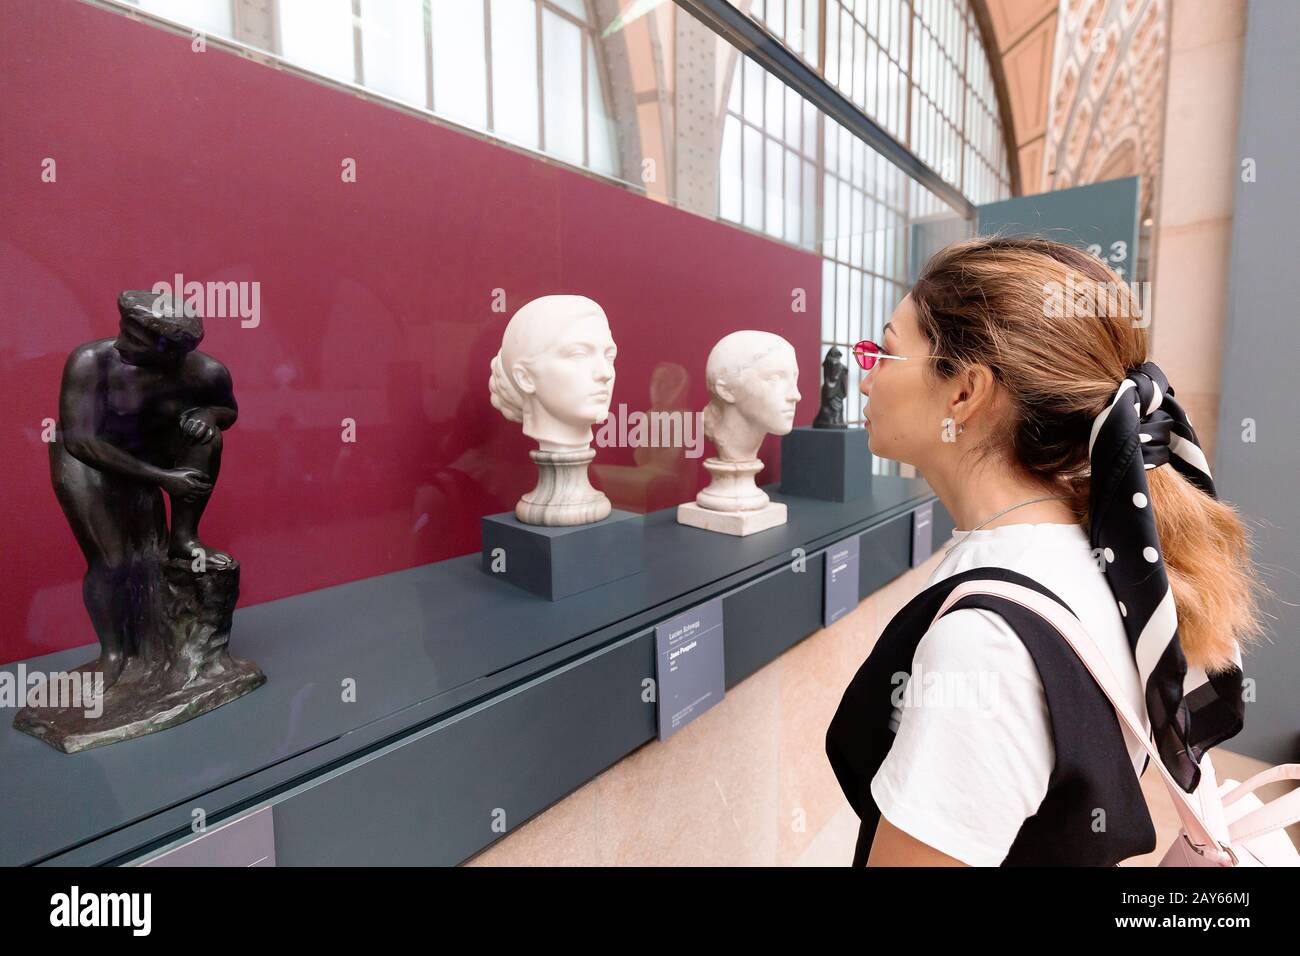 27 juillet 2019, Paris, France : une femme asiatique regardant une sculpture ancienne dans la salle d'exposition du musée d'Orsay. Concept critique et esthete Banque D'Images